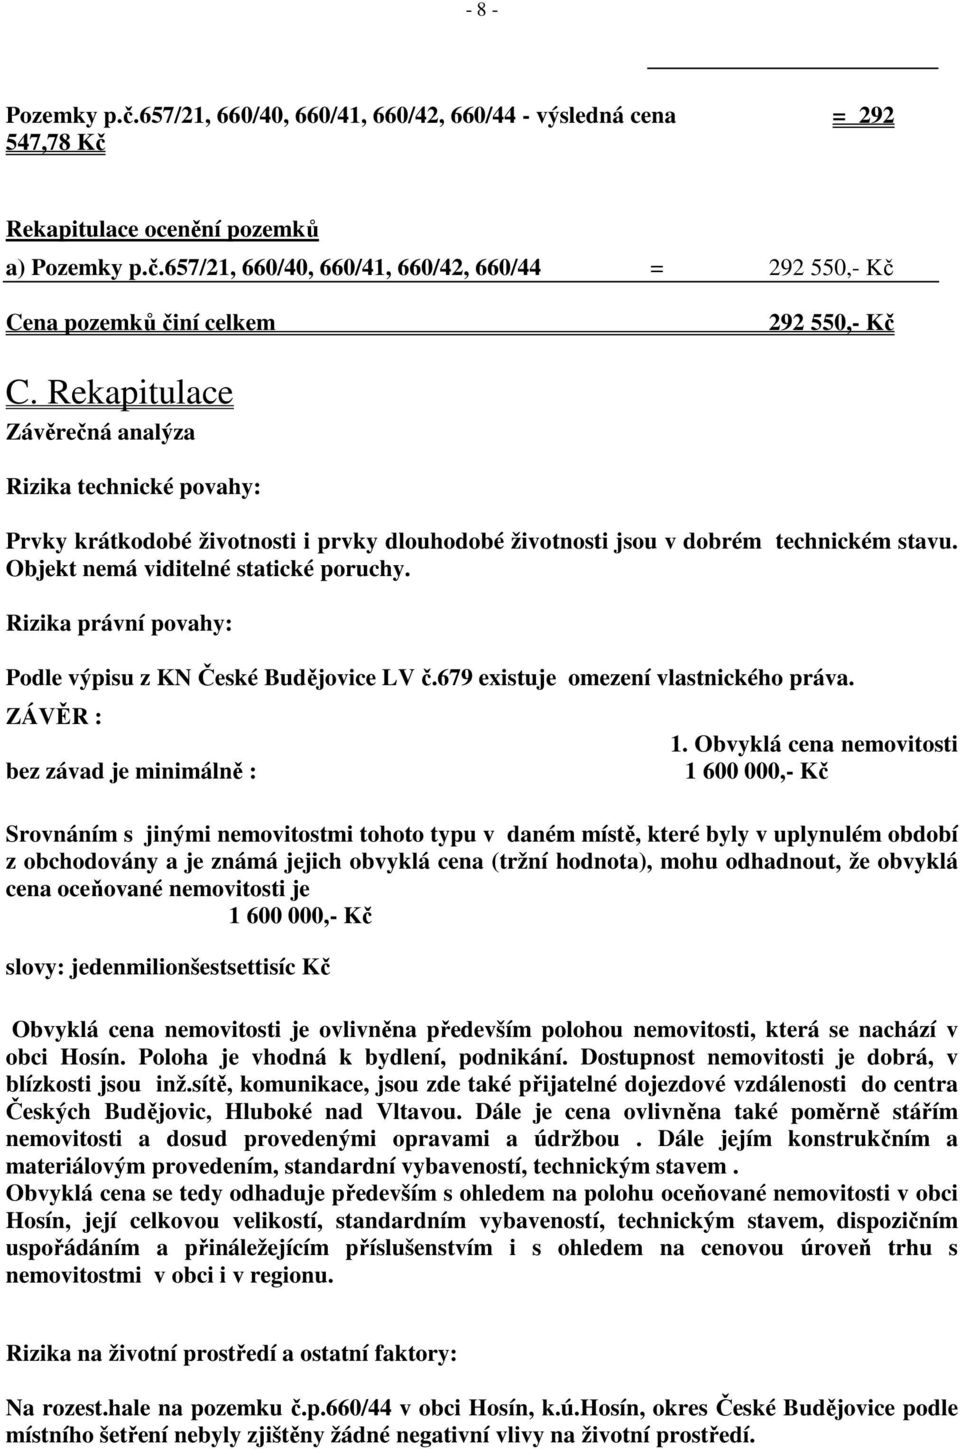 Rizika právní povahy: Podle výpisu z KN České Budějovice LV č.679 existuje omezení vlastnického práva. ZÁVĚR : bez závad je minimálně : 1.